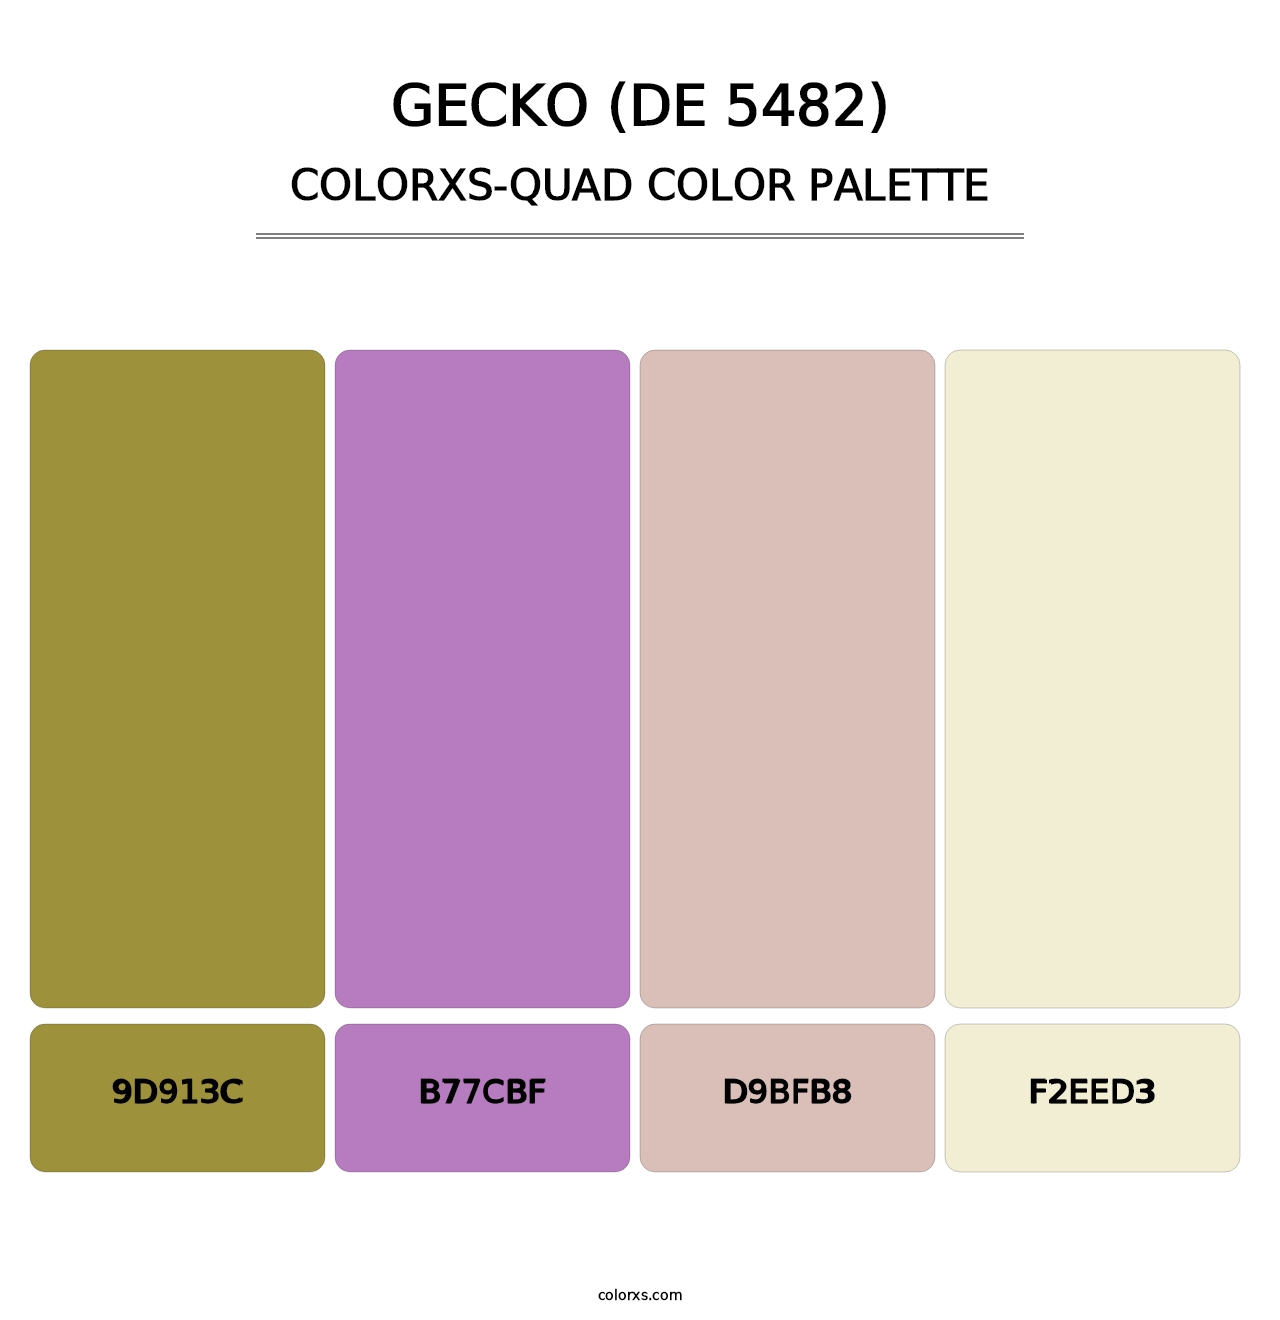 Gecko (DE 5482) - Colorxs Quad Palette